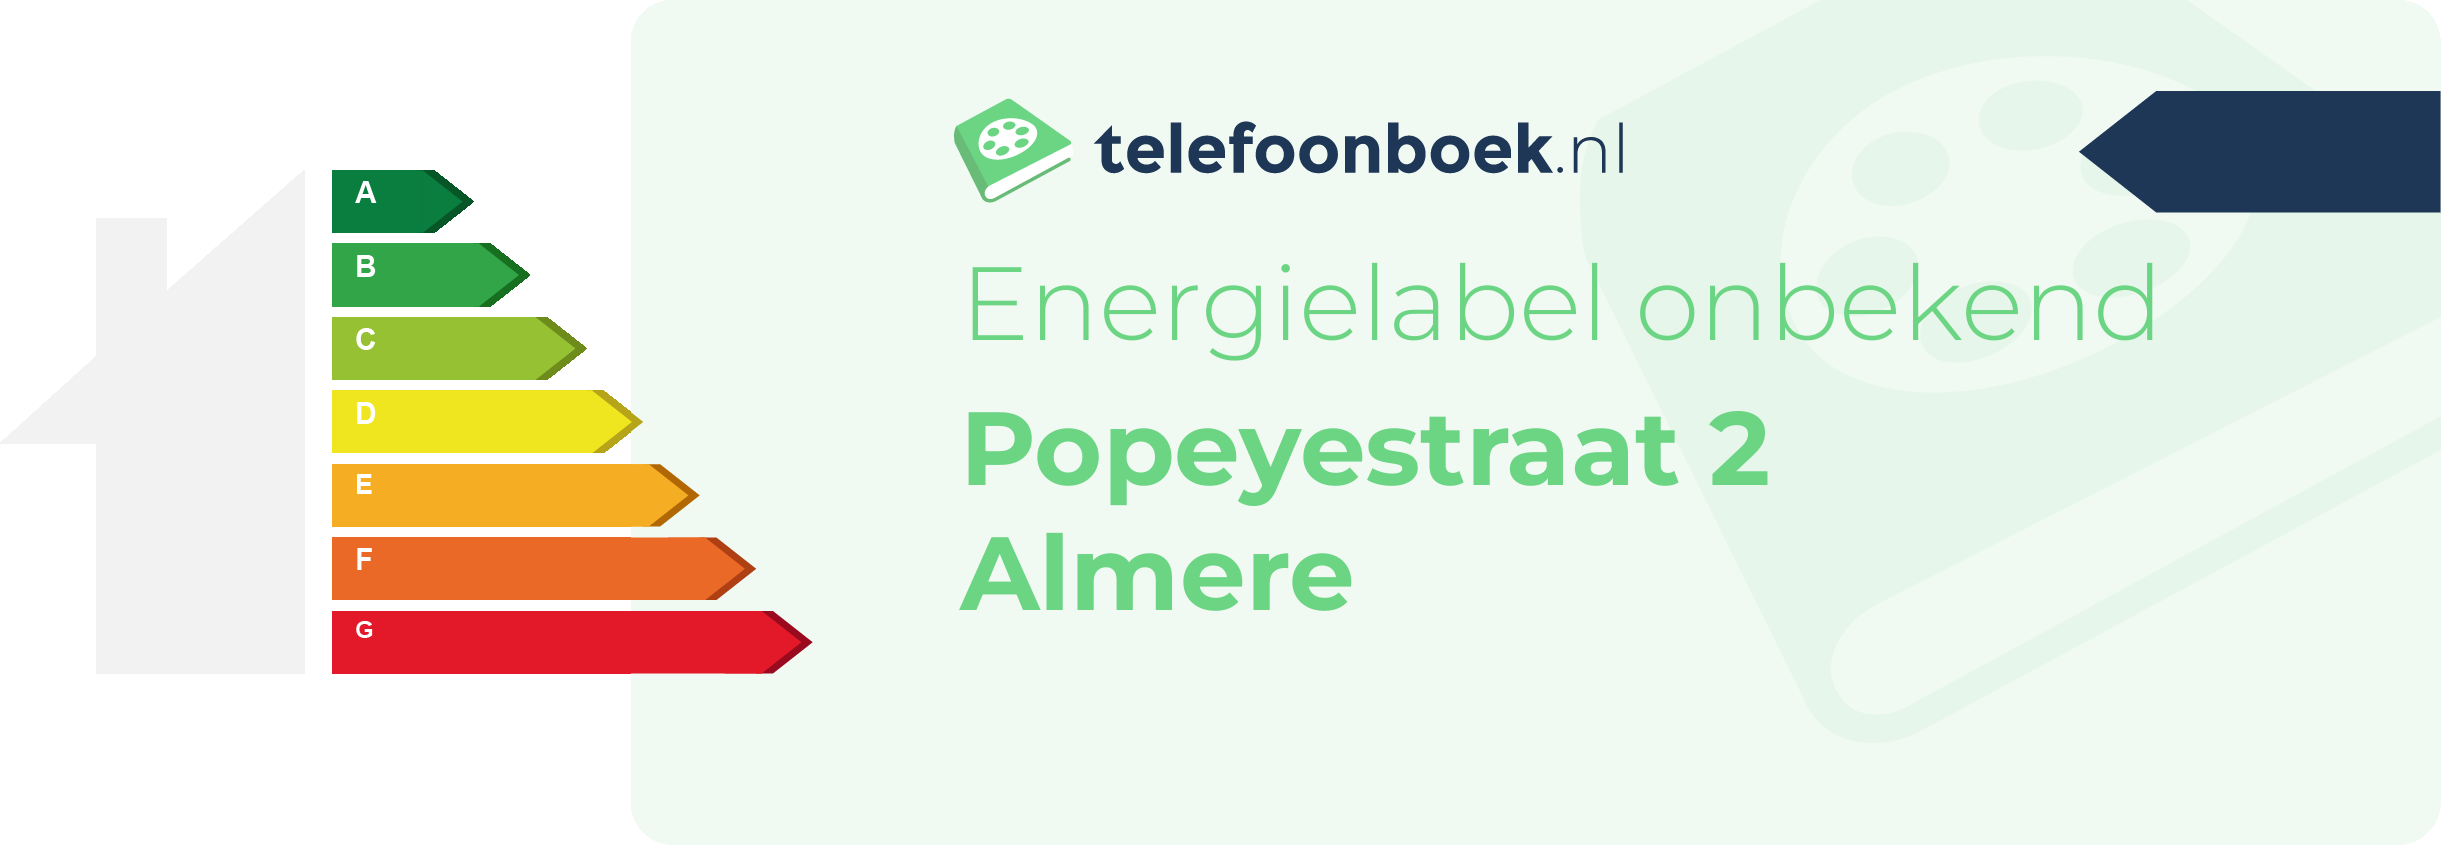 Energielabel Popeyestraat 2 Almere